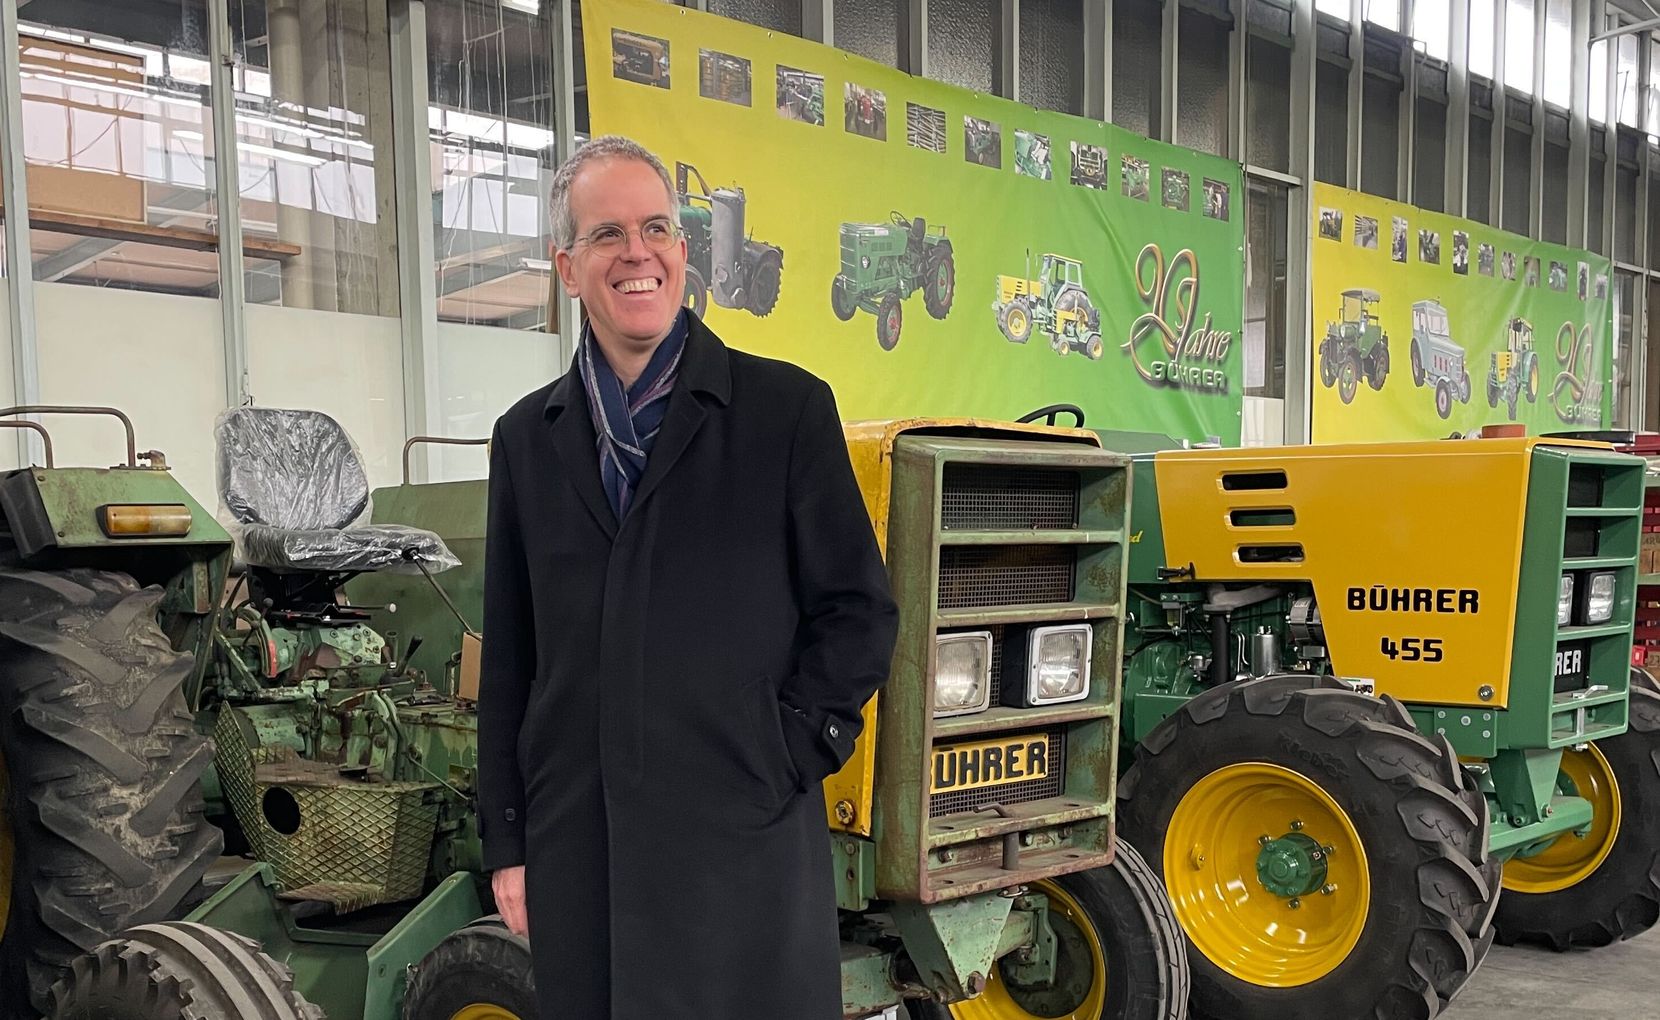 Man sieht Michel Eichenberger vor den neuesten Modellen der Bührer-Traktoren mit einem grossen Grinsen.